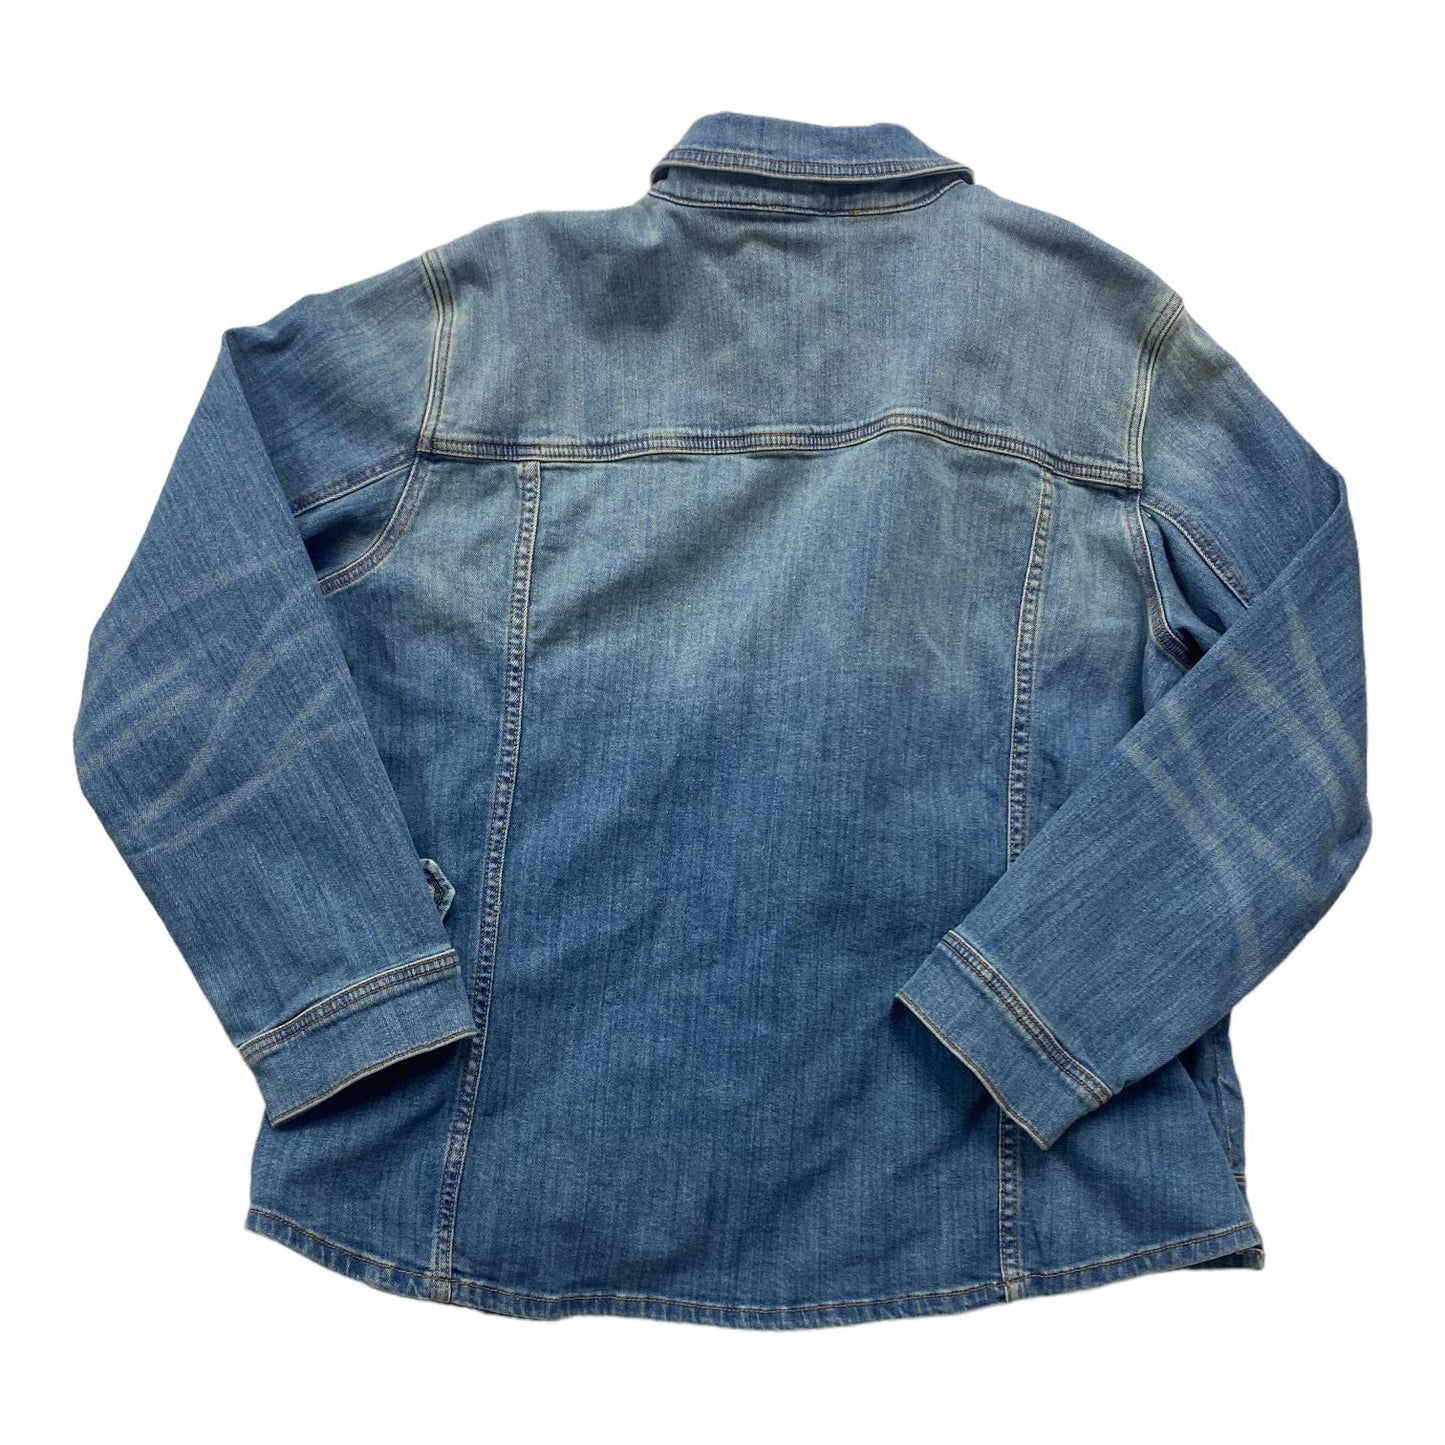 Jacket Denim By Talbots  Size: 2x